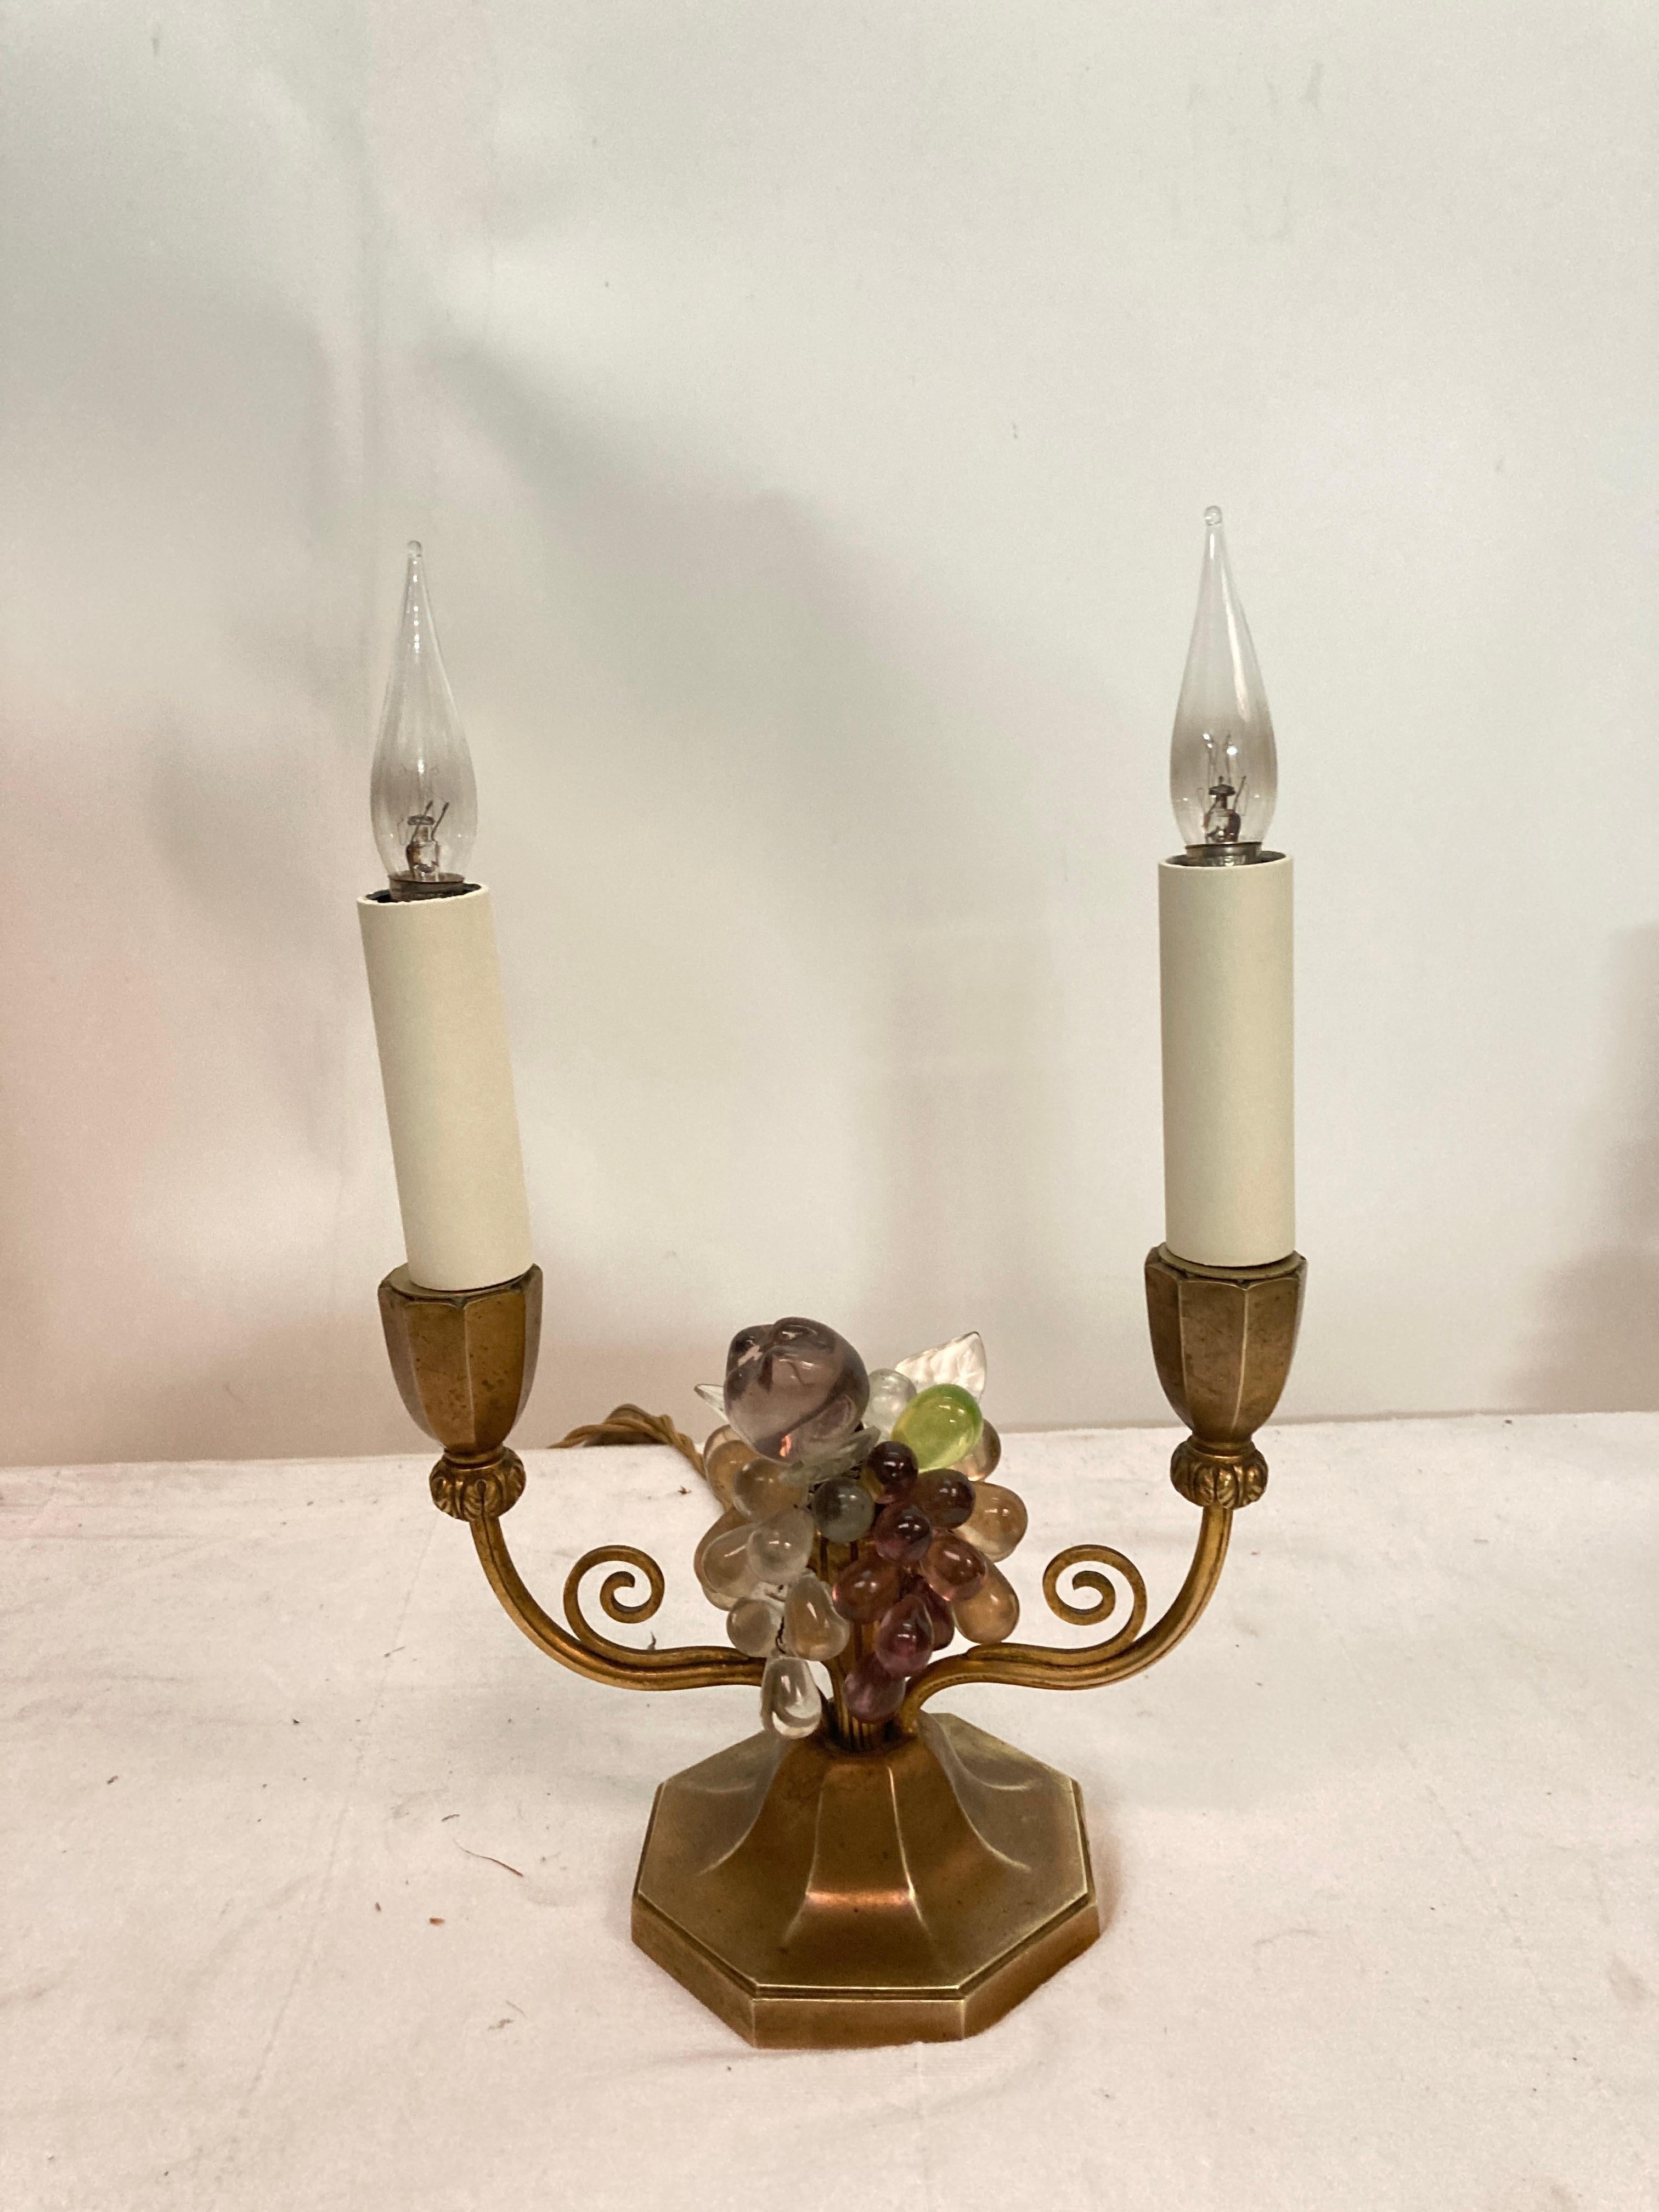 Paire de charmantes lampes en bronze et verre fruité.
attribuée à la Maison Baguès
France
Dimensions données sans les ampoules
Avec bulbes : 32 cm de haut
Recâblage